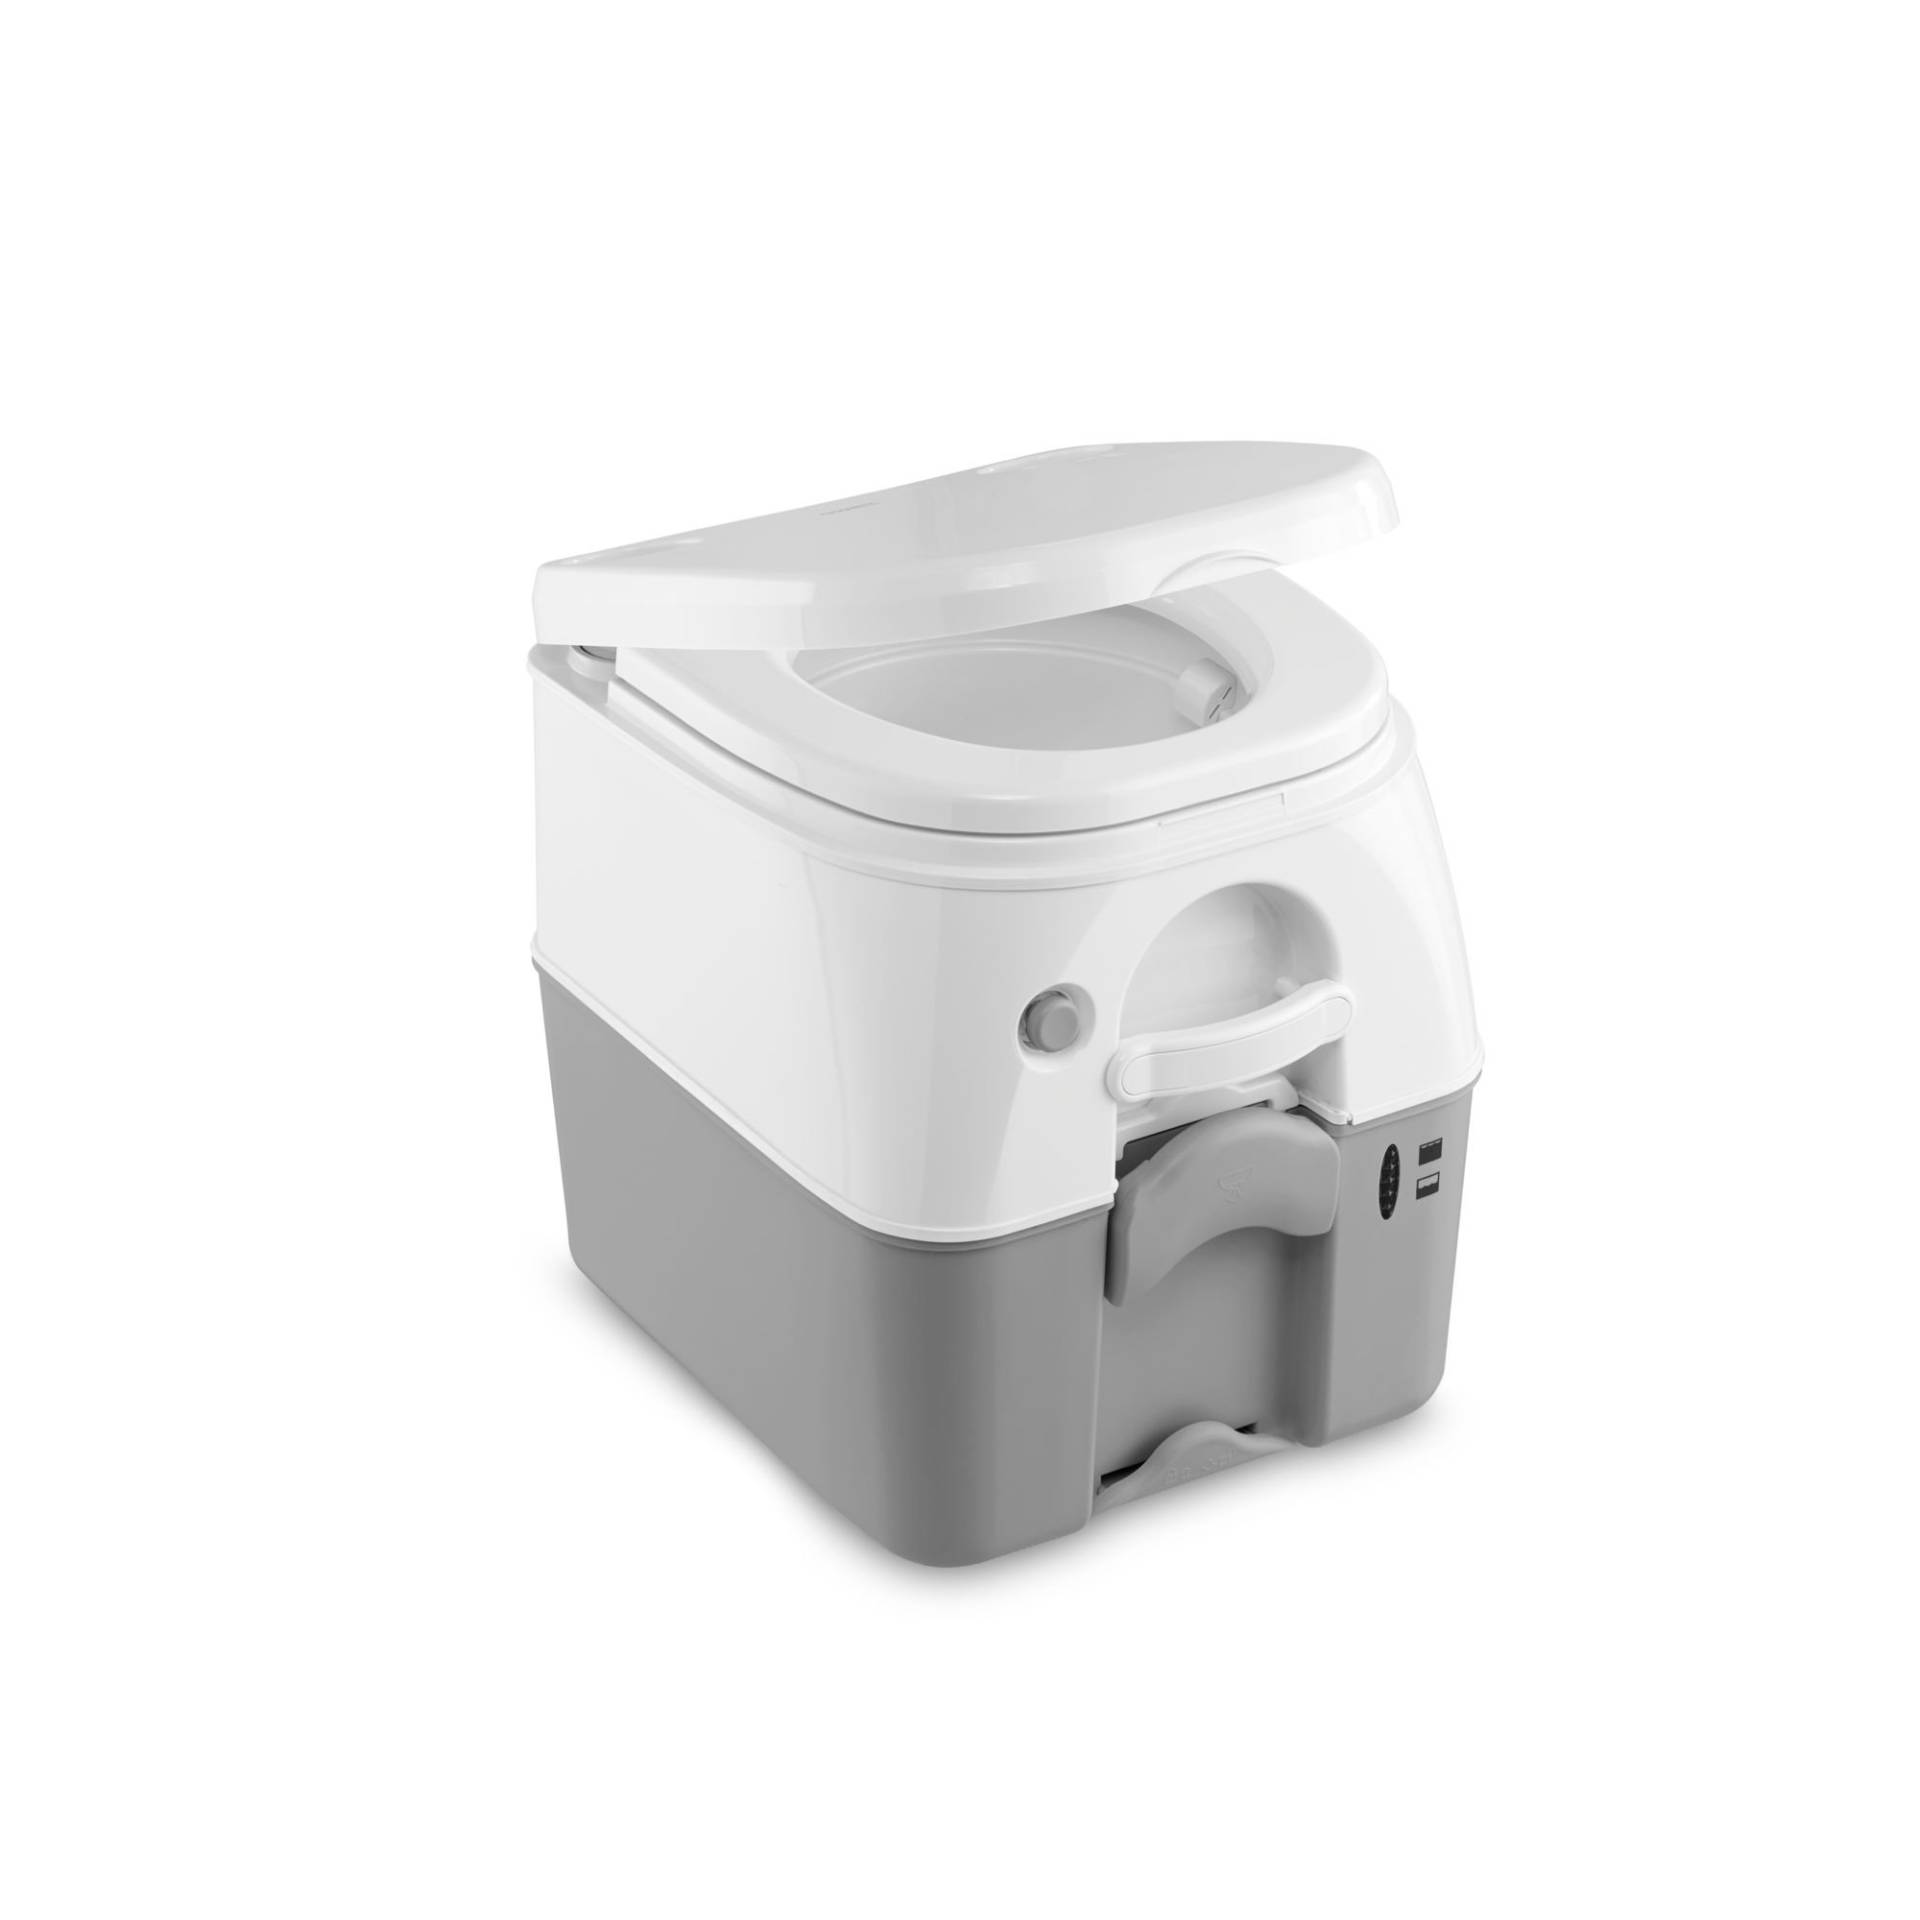 Dometic Portable 976 Camping-Toilette mit 360° Druckspülung I Abwassertank 18.9 Liter I Weiß/Grau von DOMETIC